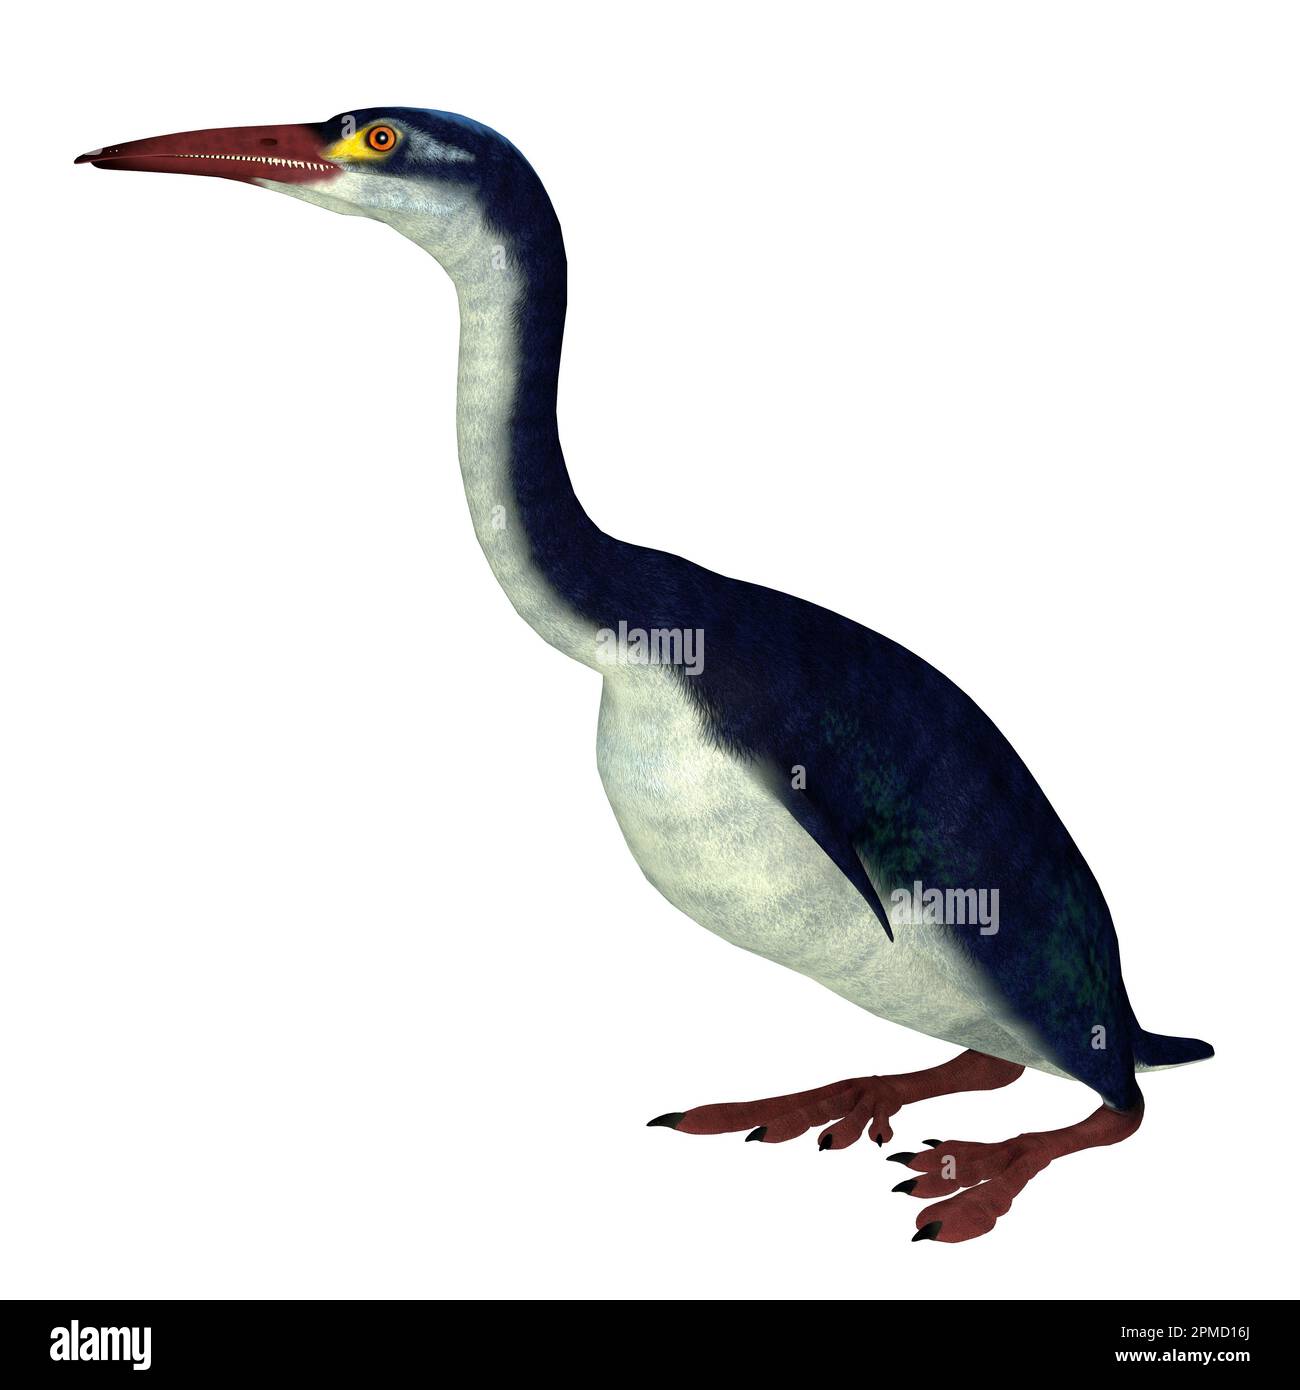 Hesperornis es un género de aves acuáticas no voladora que vivió en el período Cretácico. Foto de stock